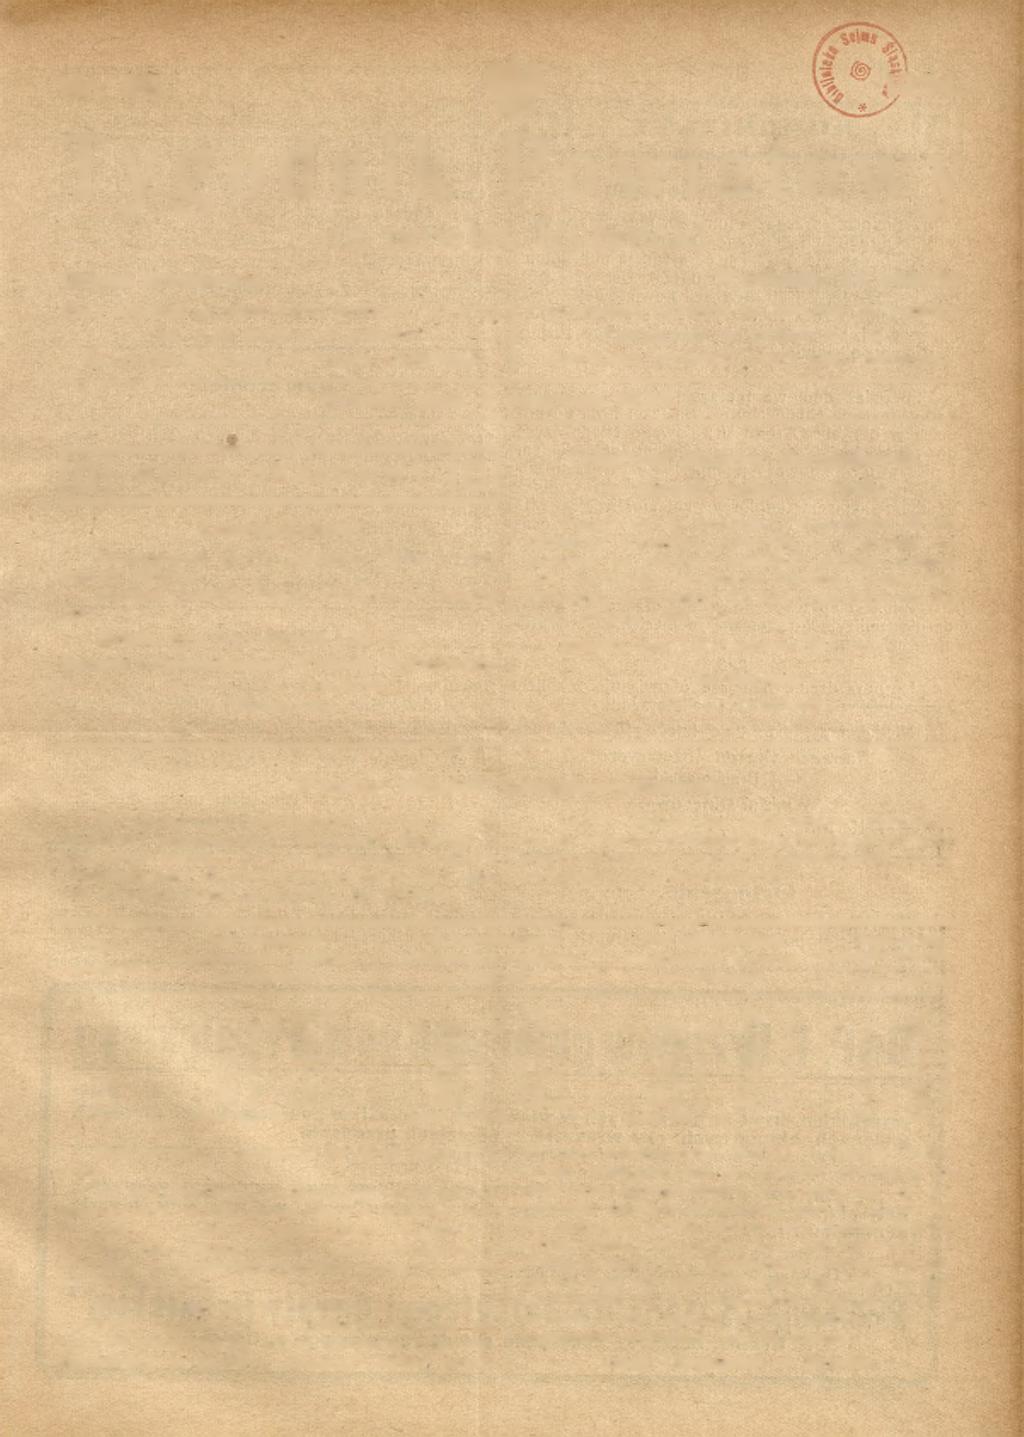 Nr. 23 1934 Tygodnik Powiatowy Organ urzędowy. Cena ogłoszeń za jeden wiersz petytowy 6-łamowy lub jego miejsce 15 groszy. Za reklamę 30 groszy od wiersza petytowego.